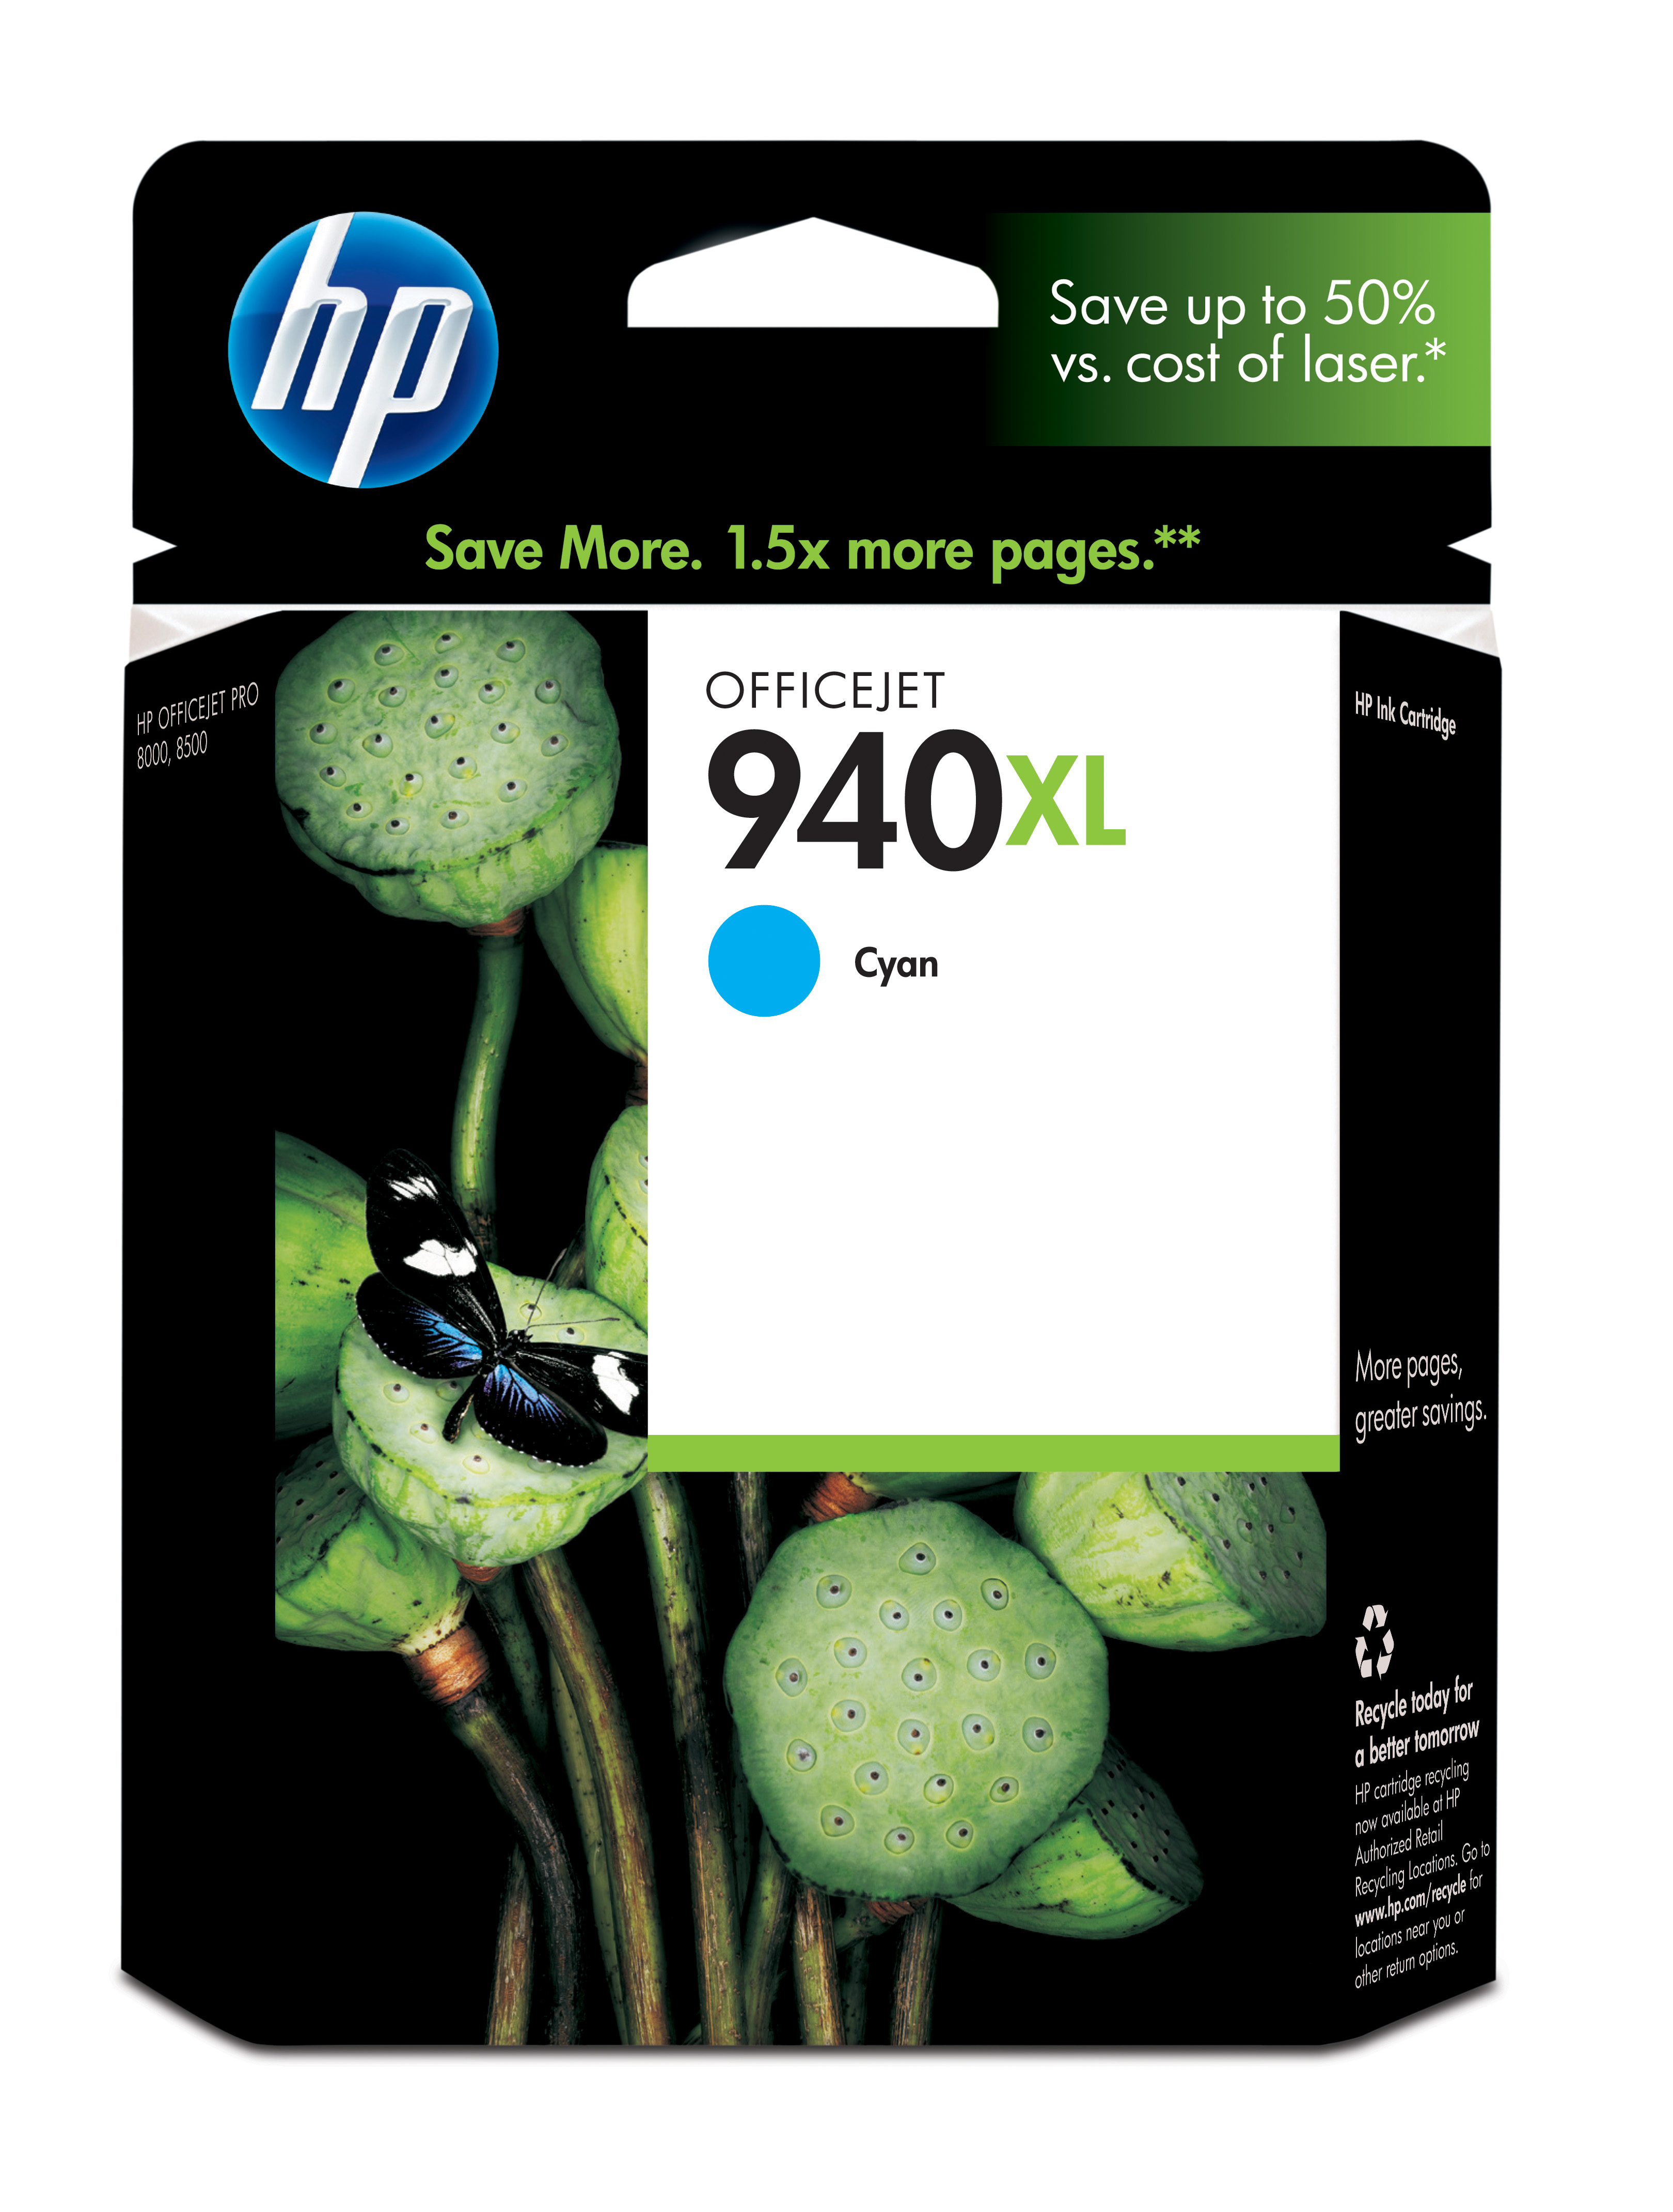 HP 940XL Cyan Officejet Ink Cartridge Genuine HP Inkjet